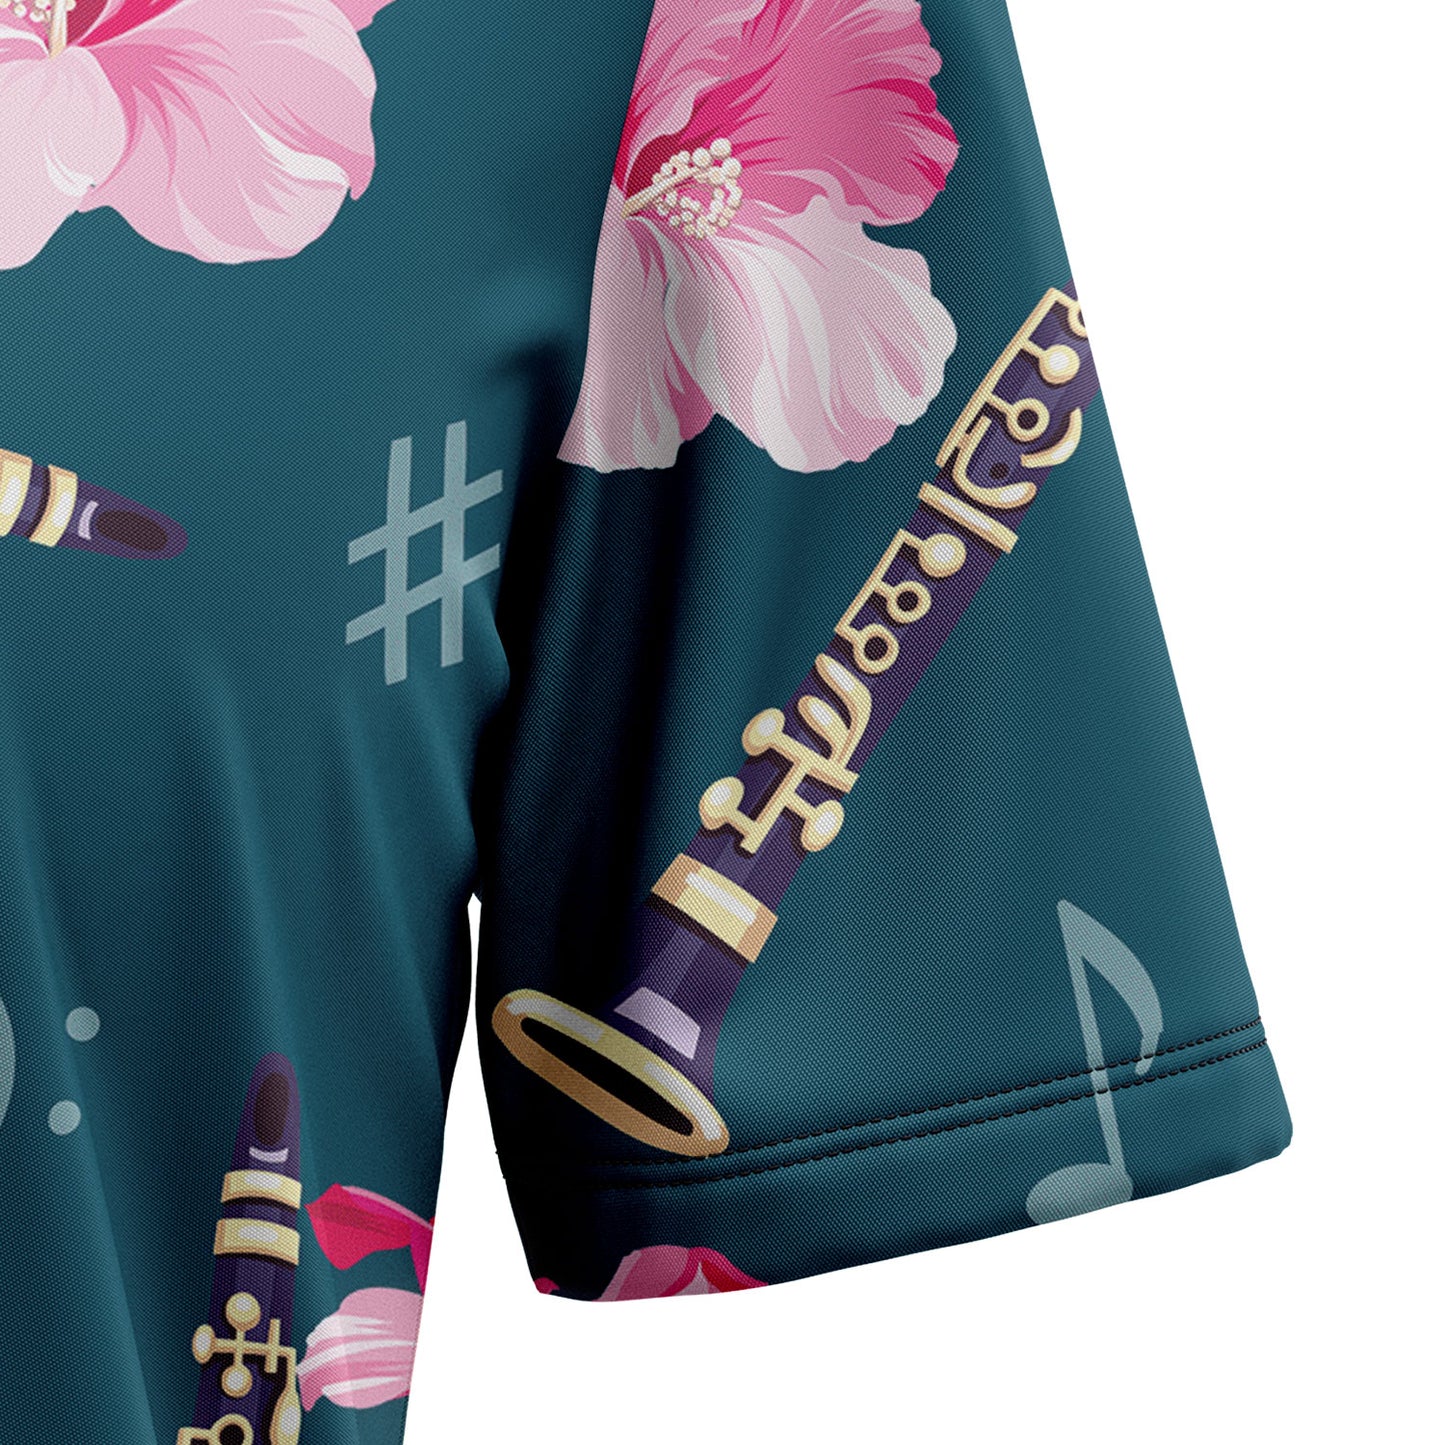 Flute Hibiscus Flower T1007 Hawaiian Shirt